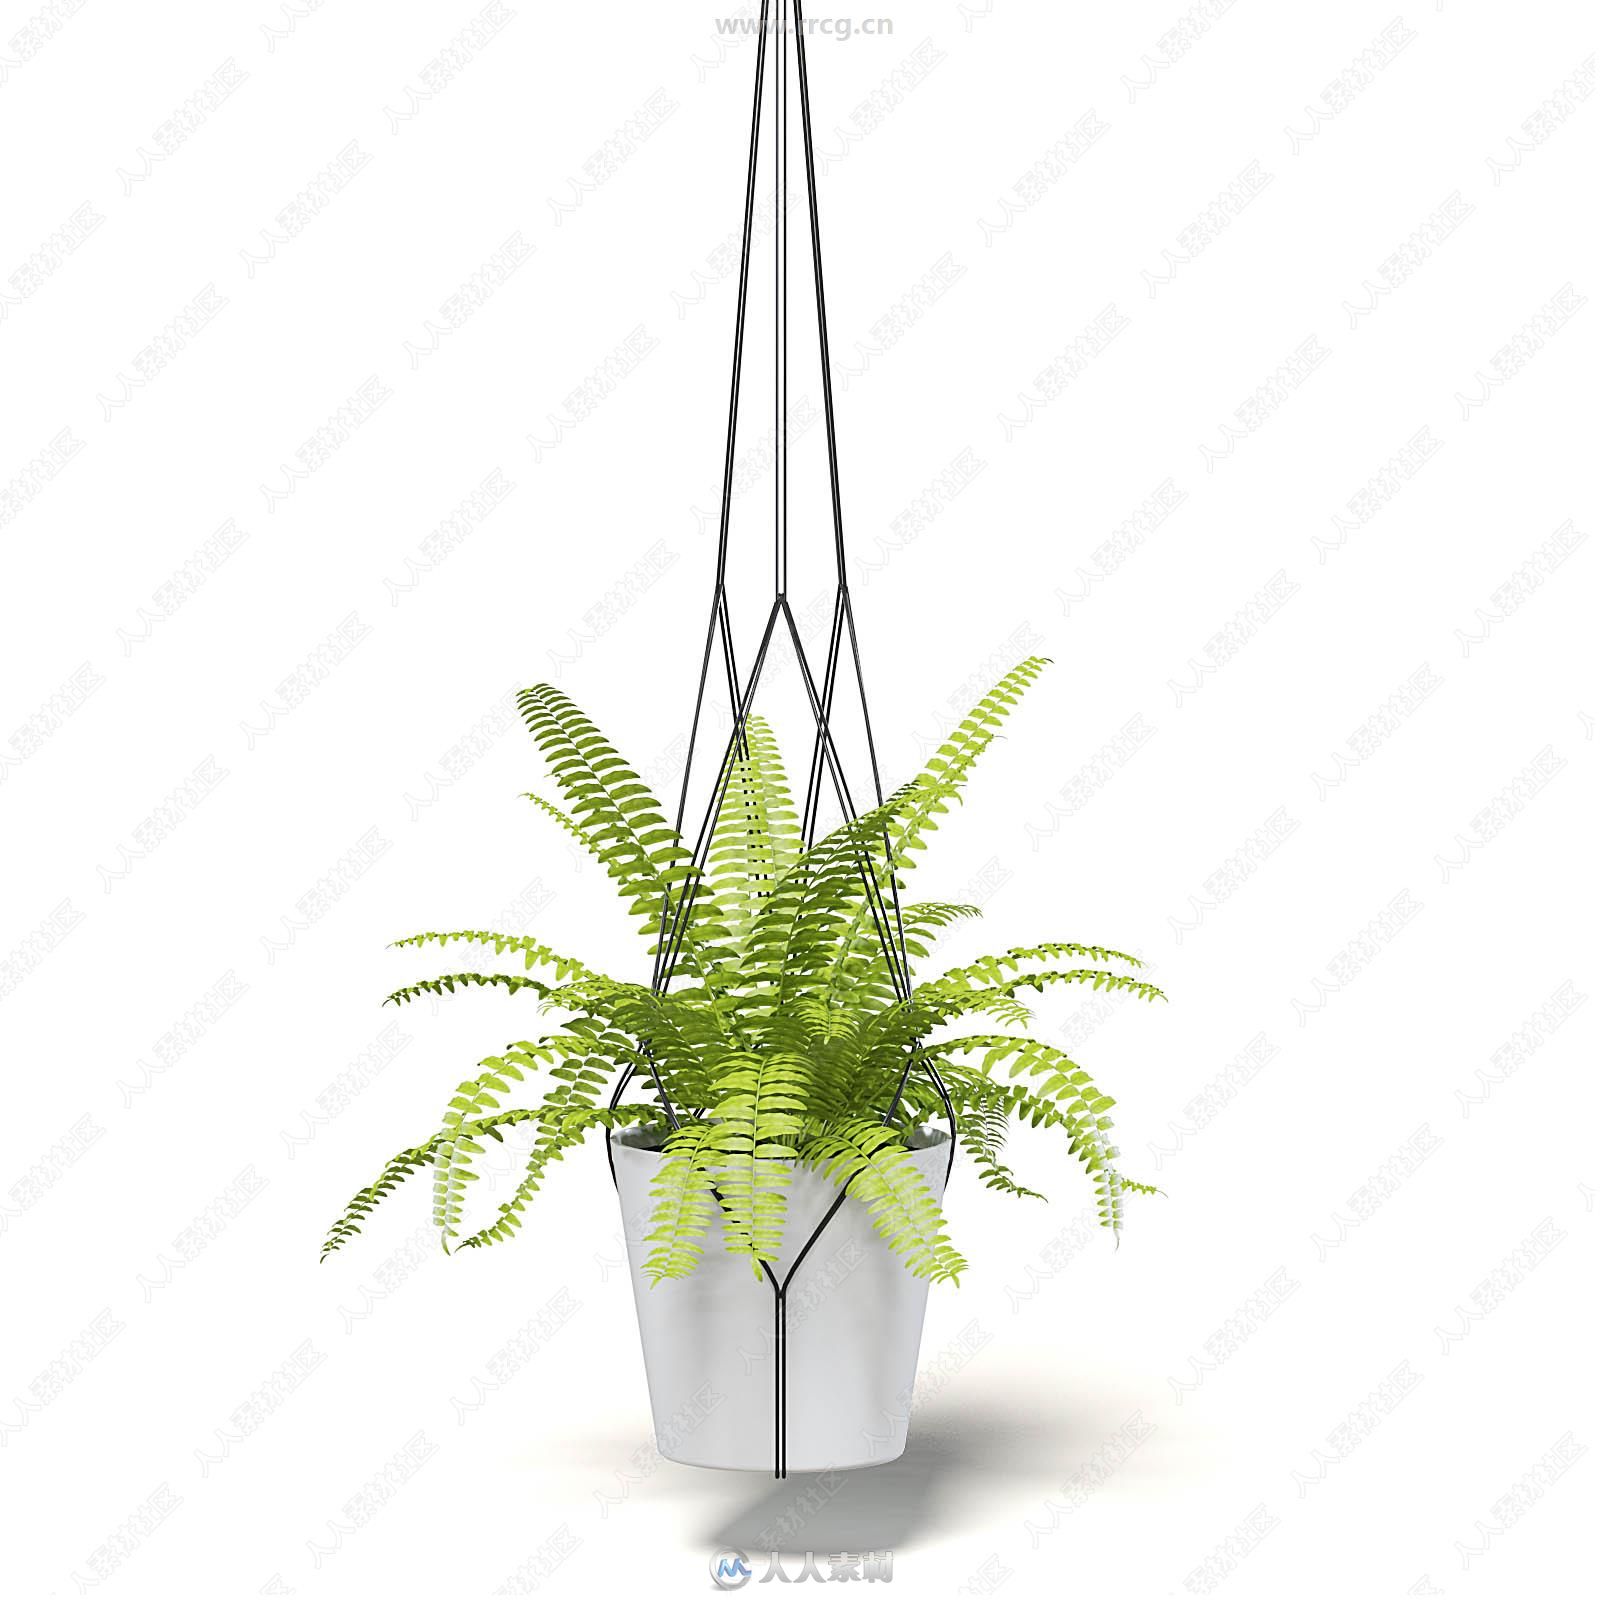 30组室内盆栽植物装饰3D模型合集 CGAxis第111期